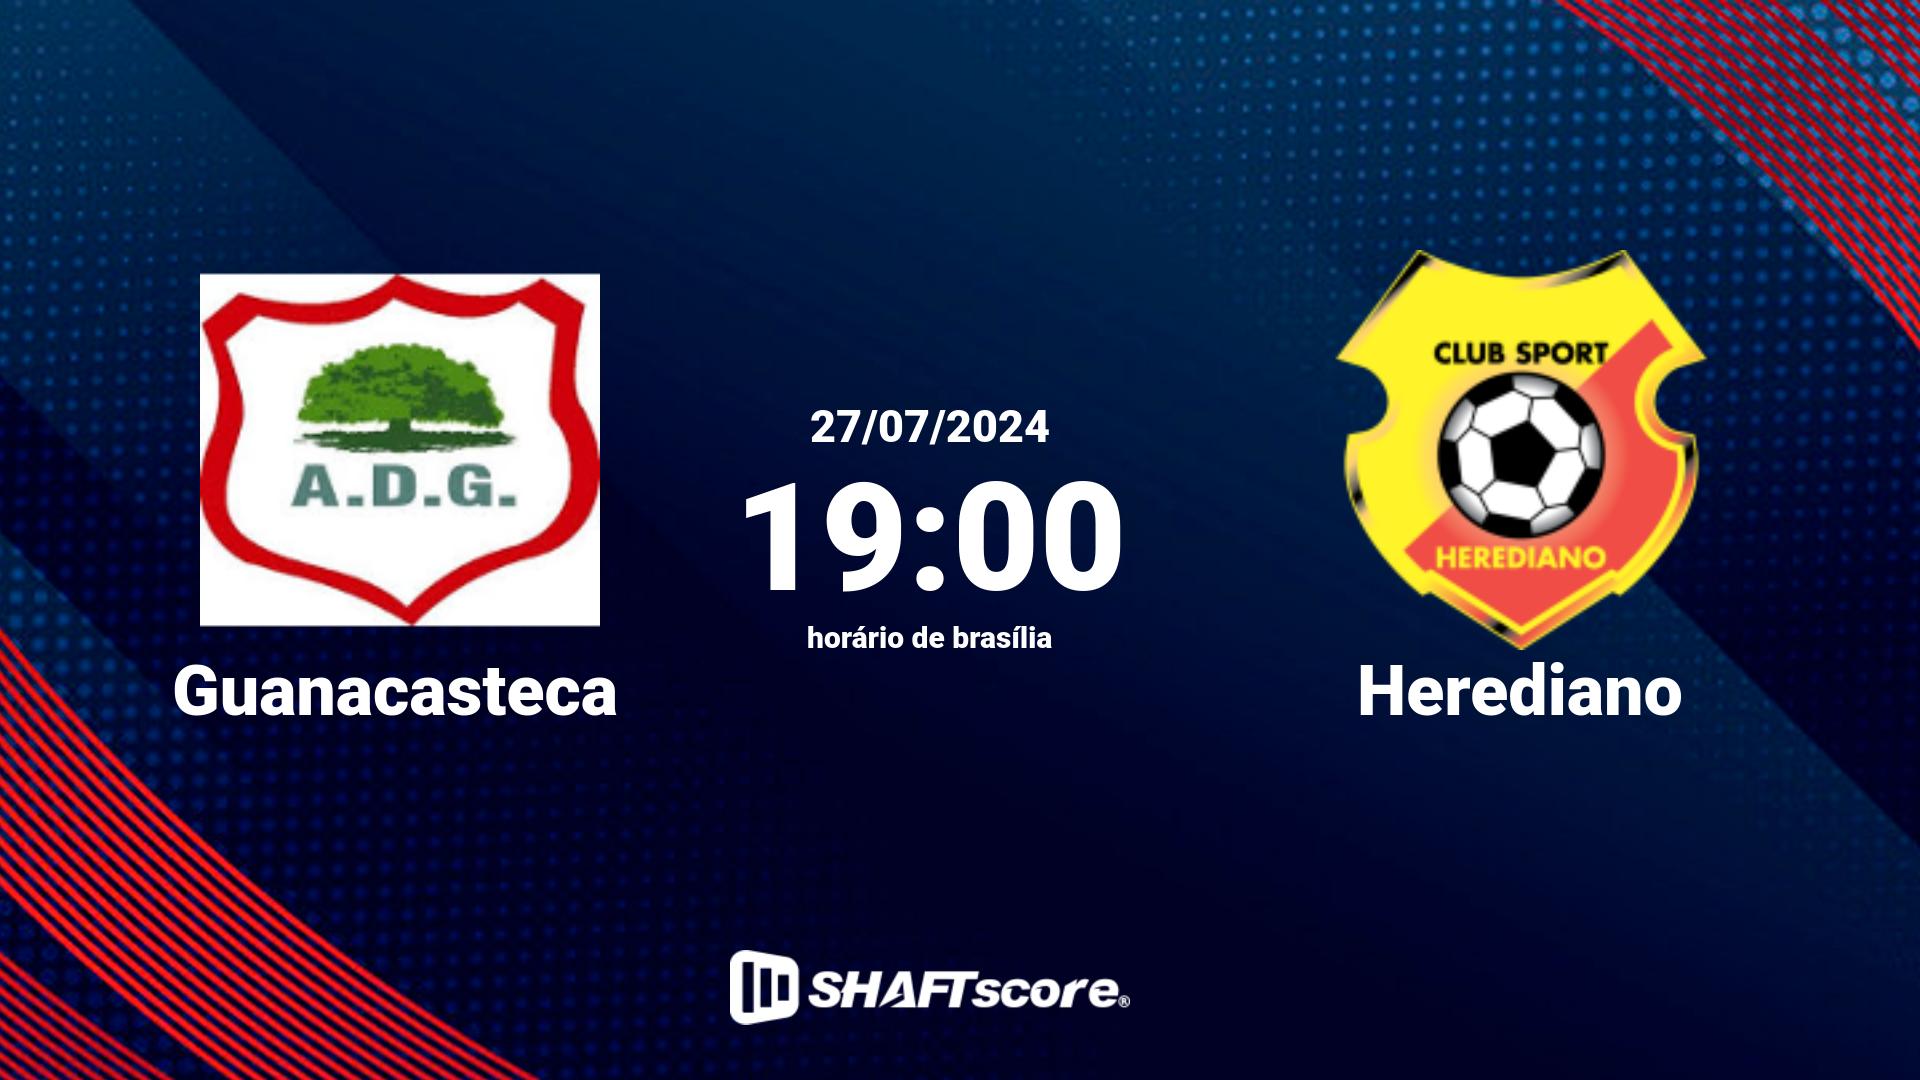 Estatísticas do jogo Guanacasteca vs Herediano 27.07 19:00